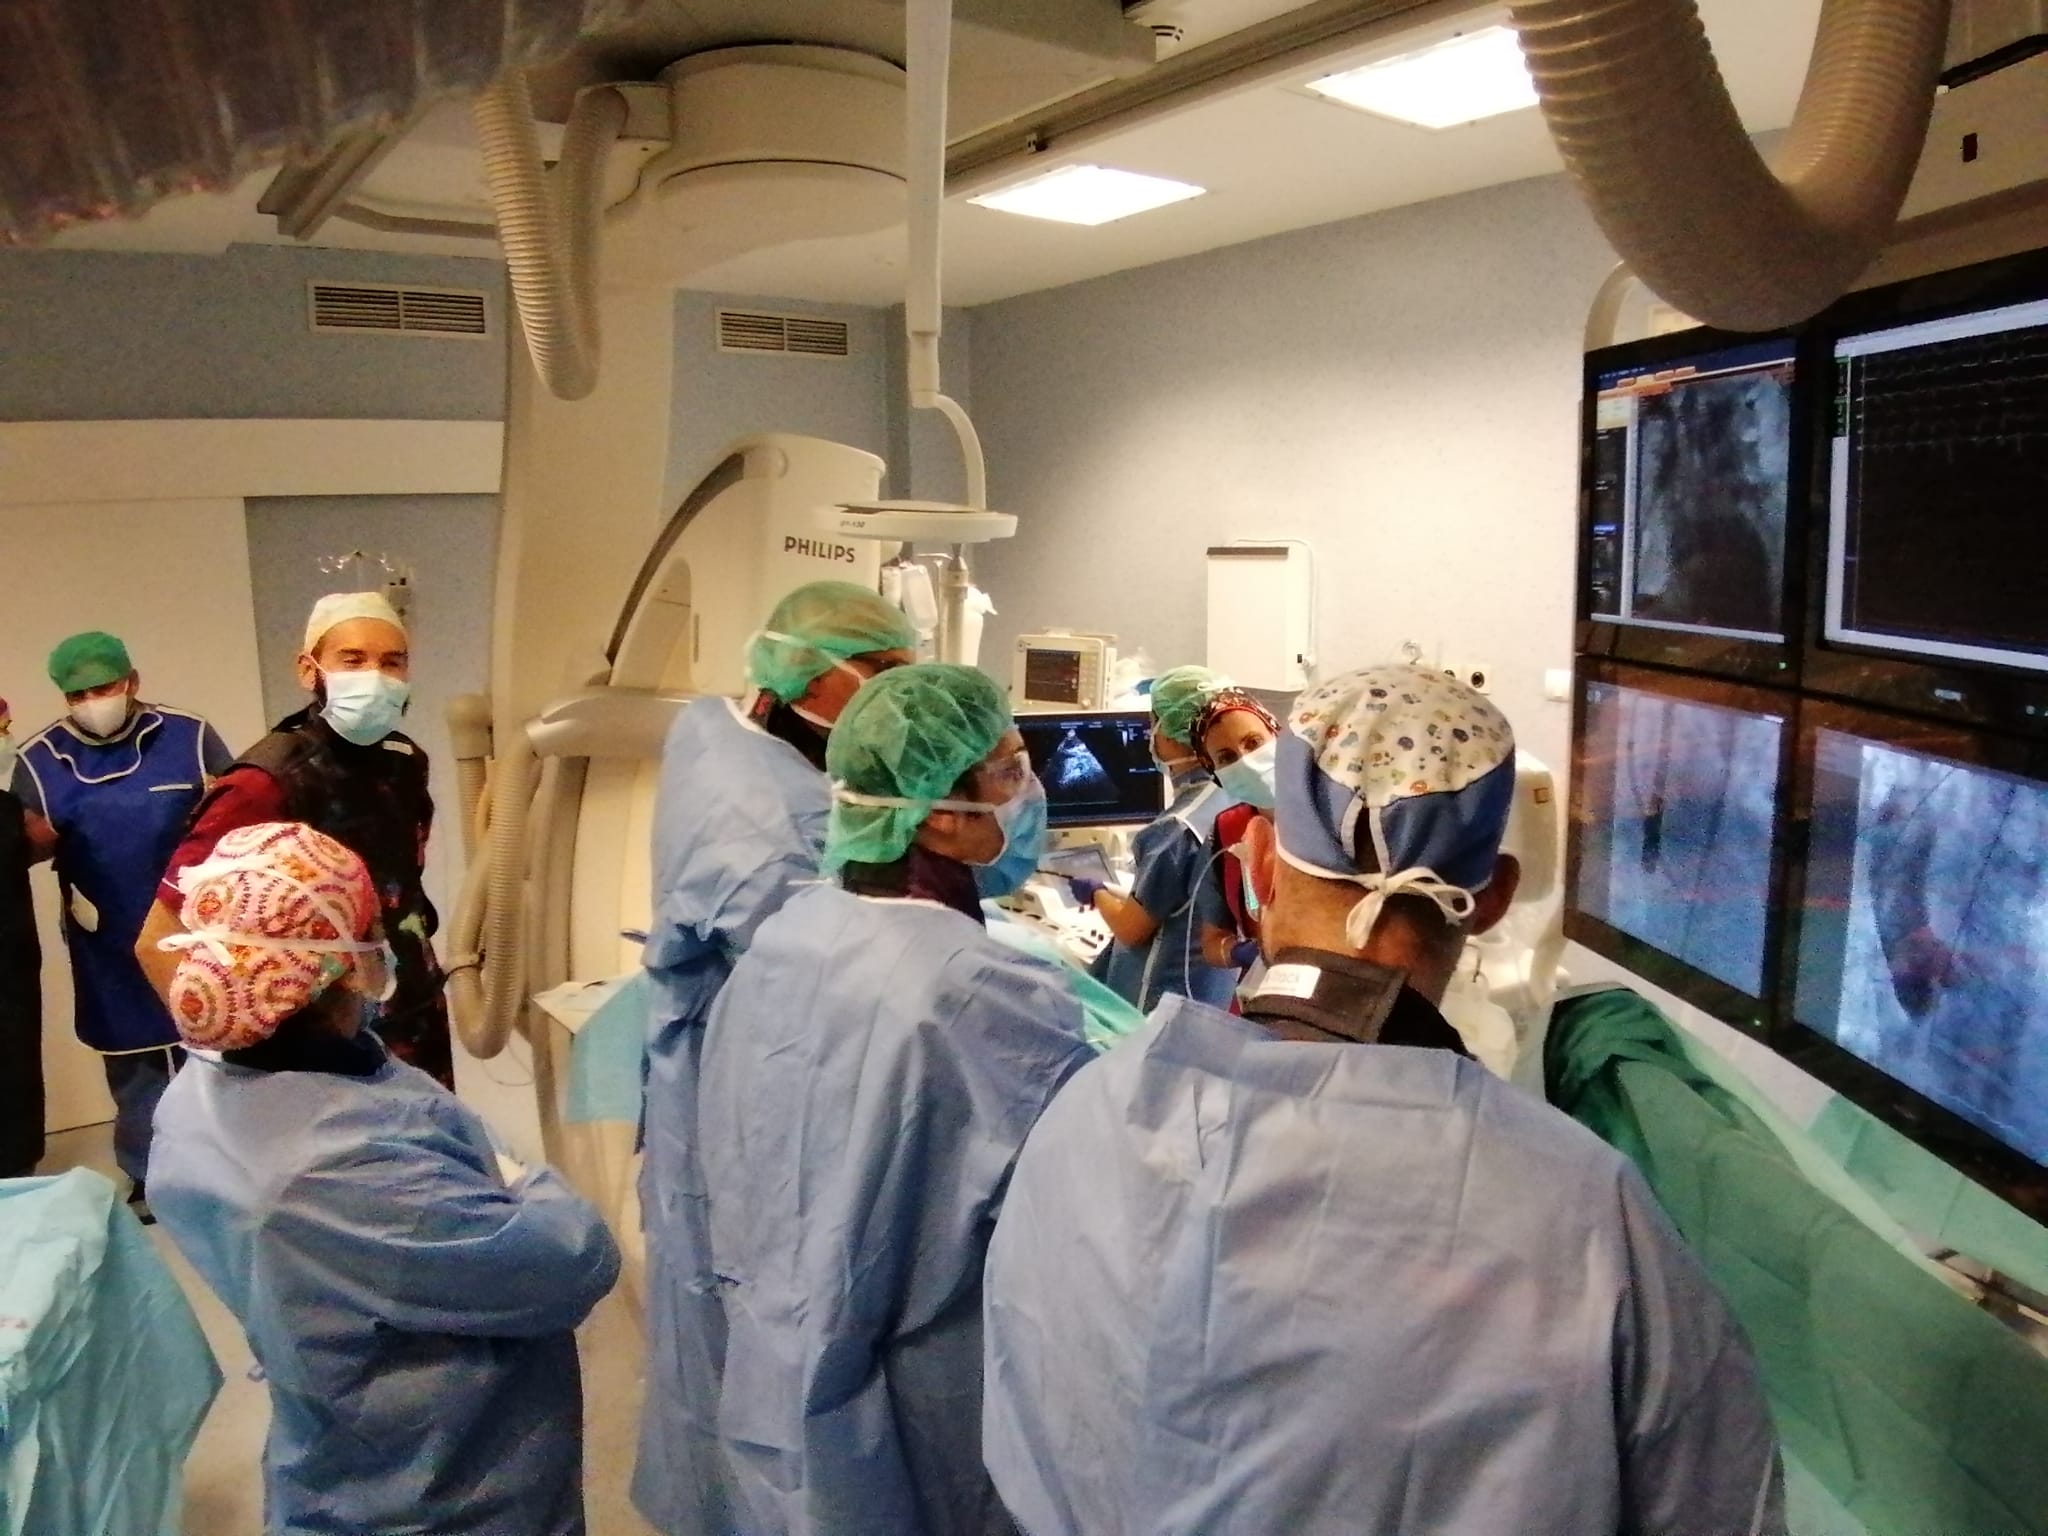 Hospitales Universitarios San Roque implanta con éxito una válvula aórtica de forma percutánea